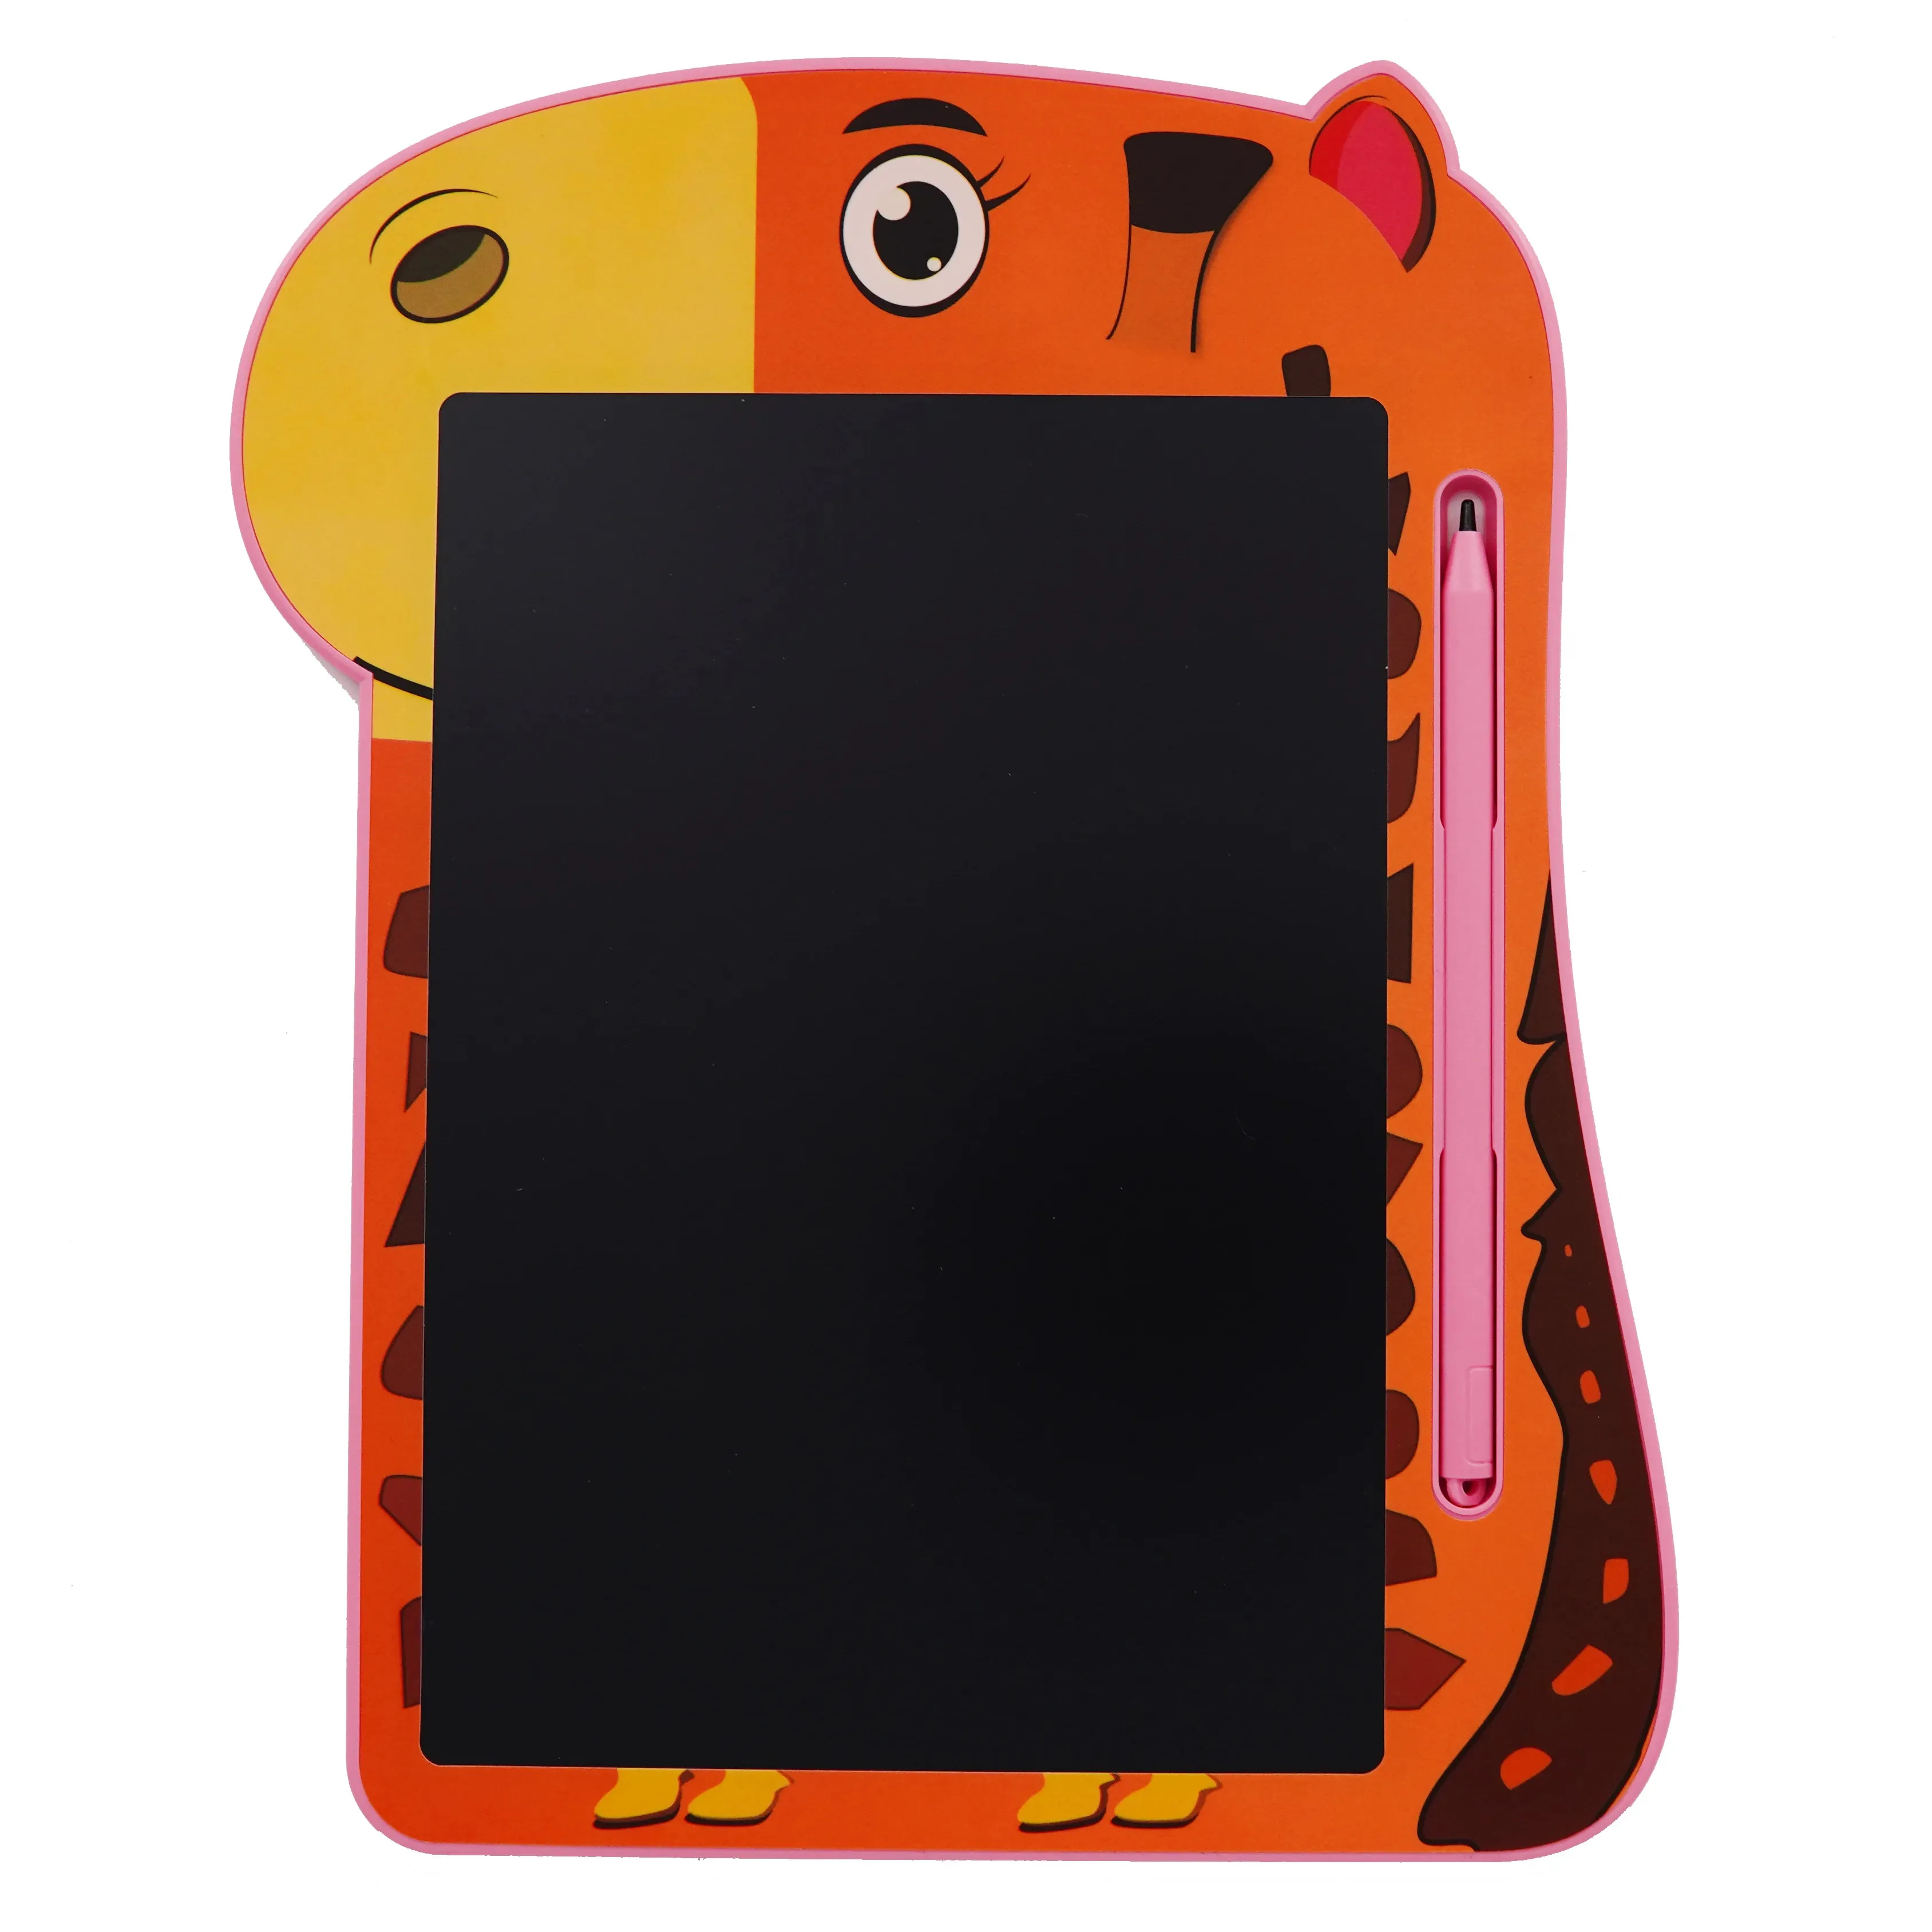 Mihua LCD tableau d'écriture 8.5 pouces planche à dessin numérique Graffiti Pad pour enfants jouets éducatifs LCD tablette d'écriture